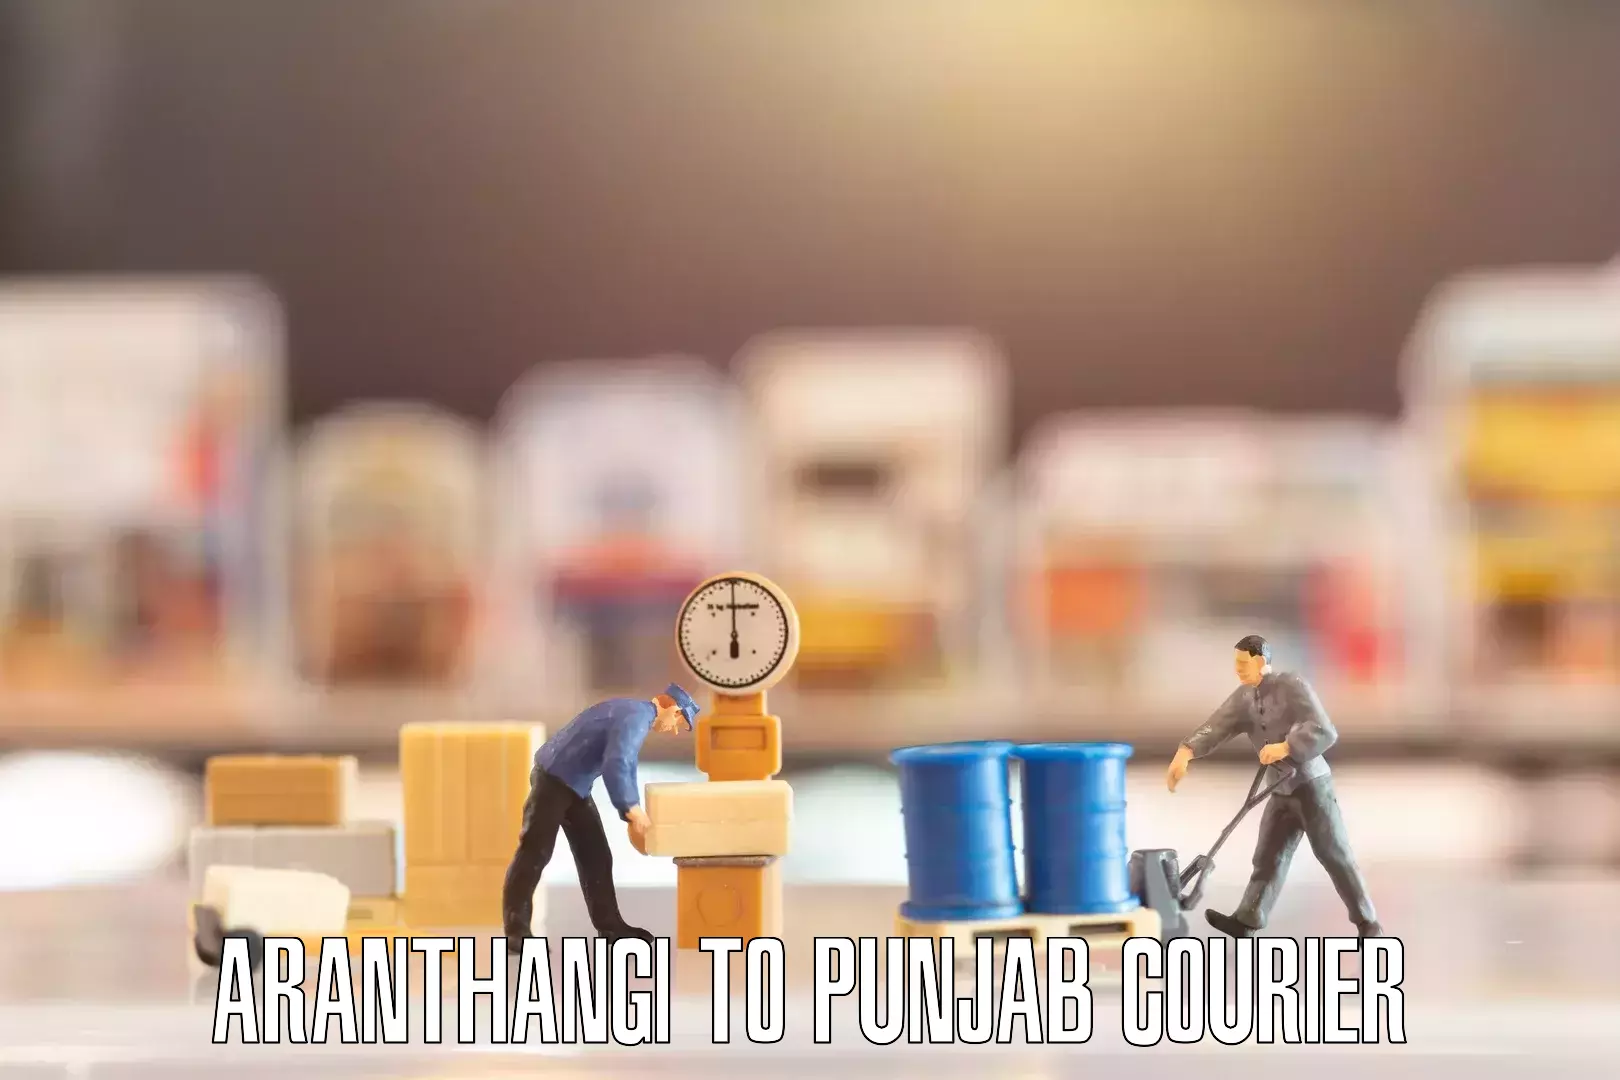 Residential moving experts Aranthangi to Punjab